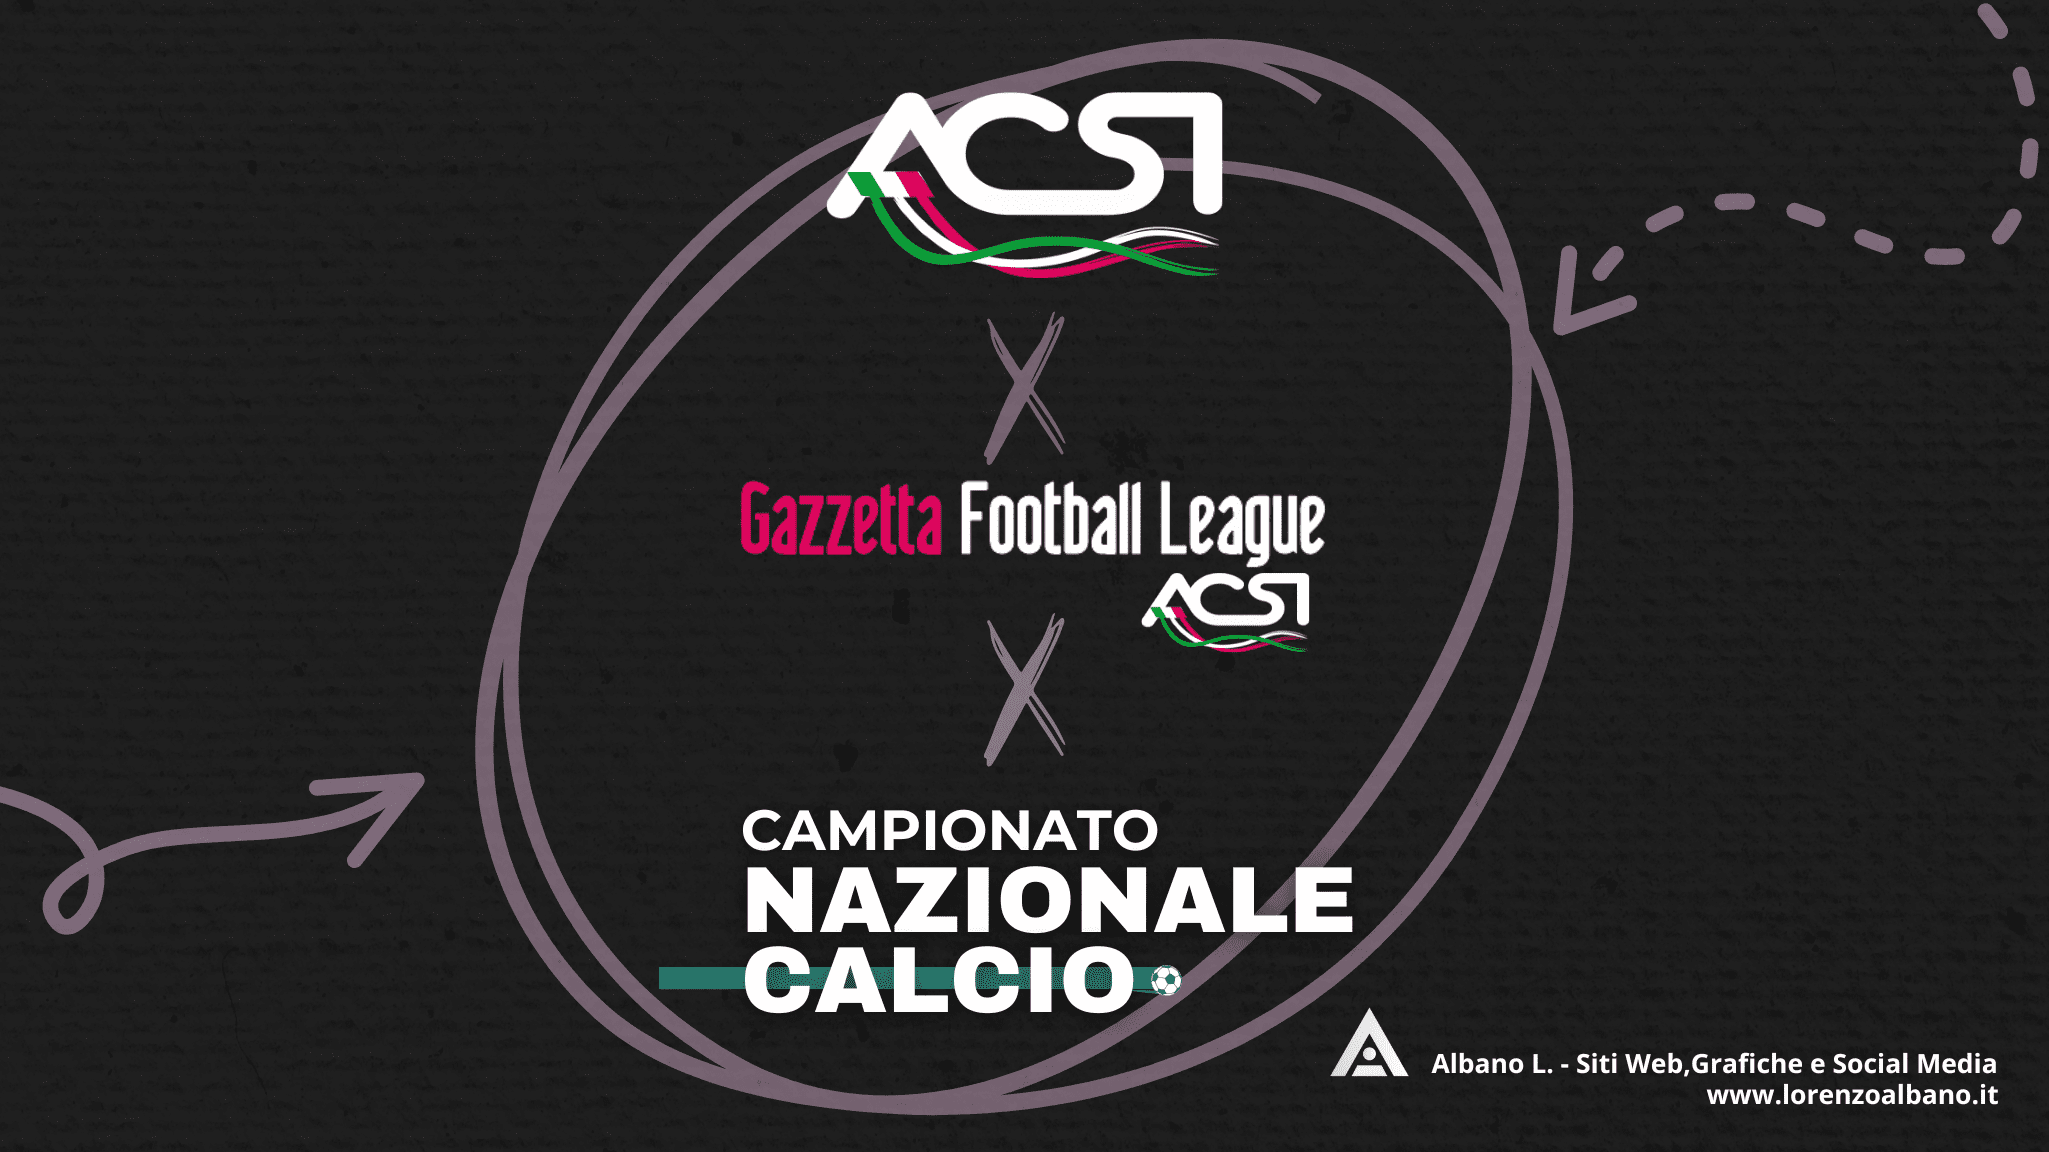 CAMPIONATO
NAZIONALE
CALCIO
GAZZETTA FOOTBALL LEAGUE ACSI